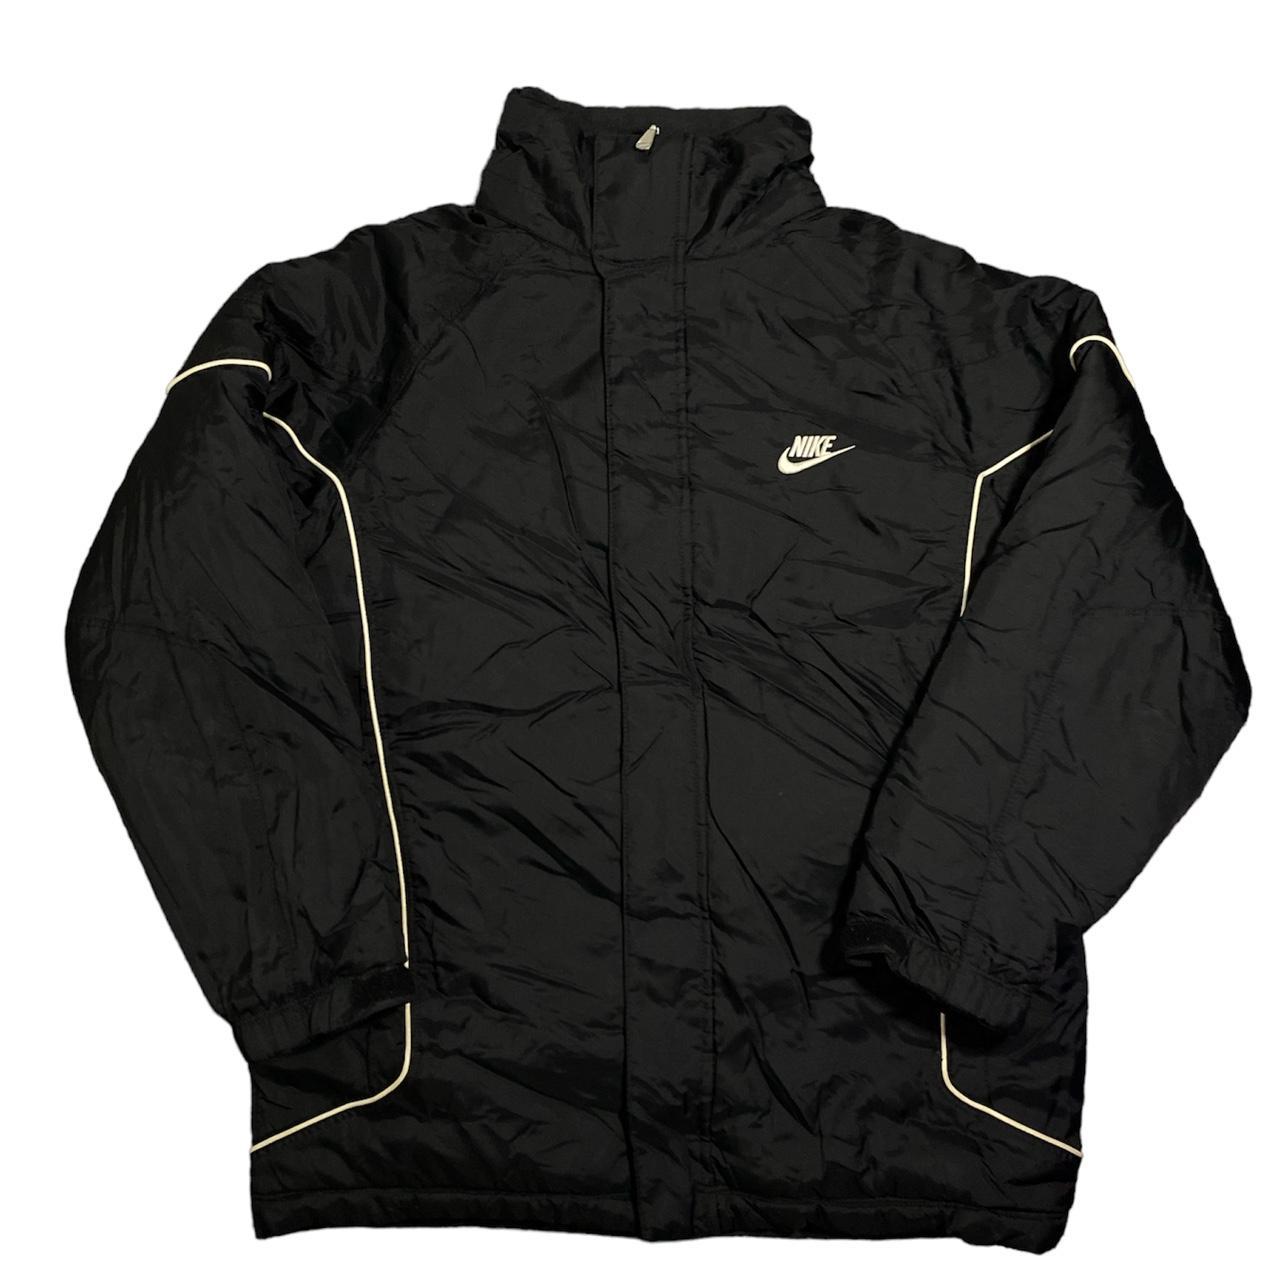 Vintage Nike puffer jacket - size large on tag fits... - Depop